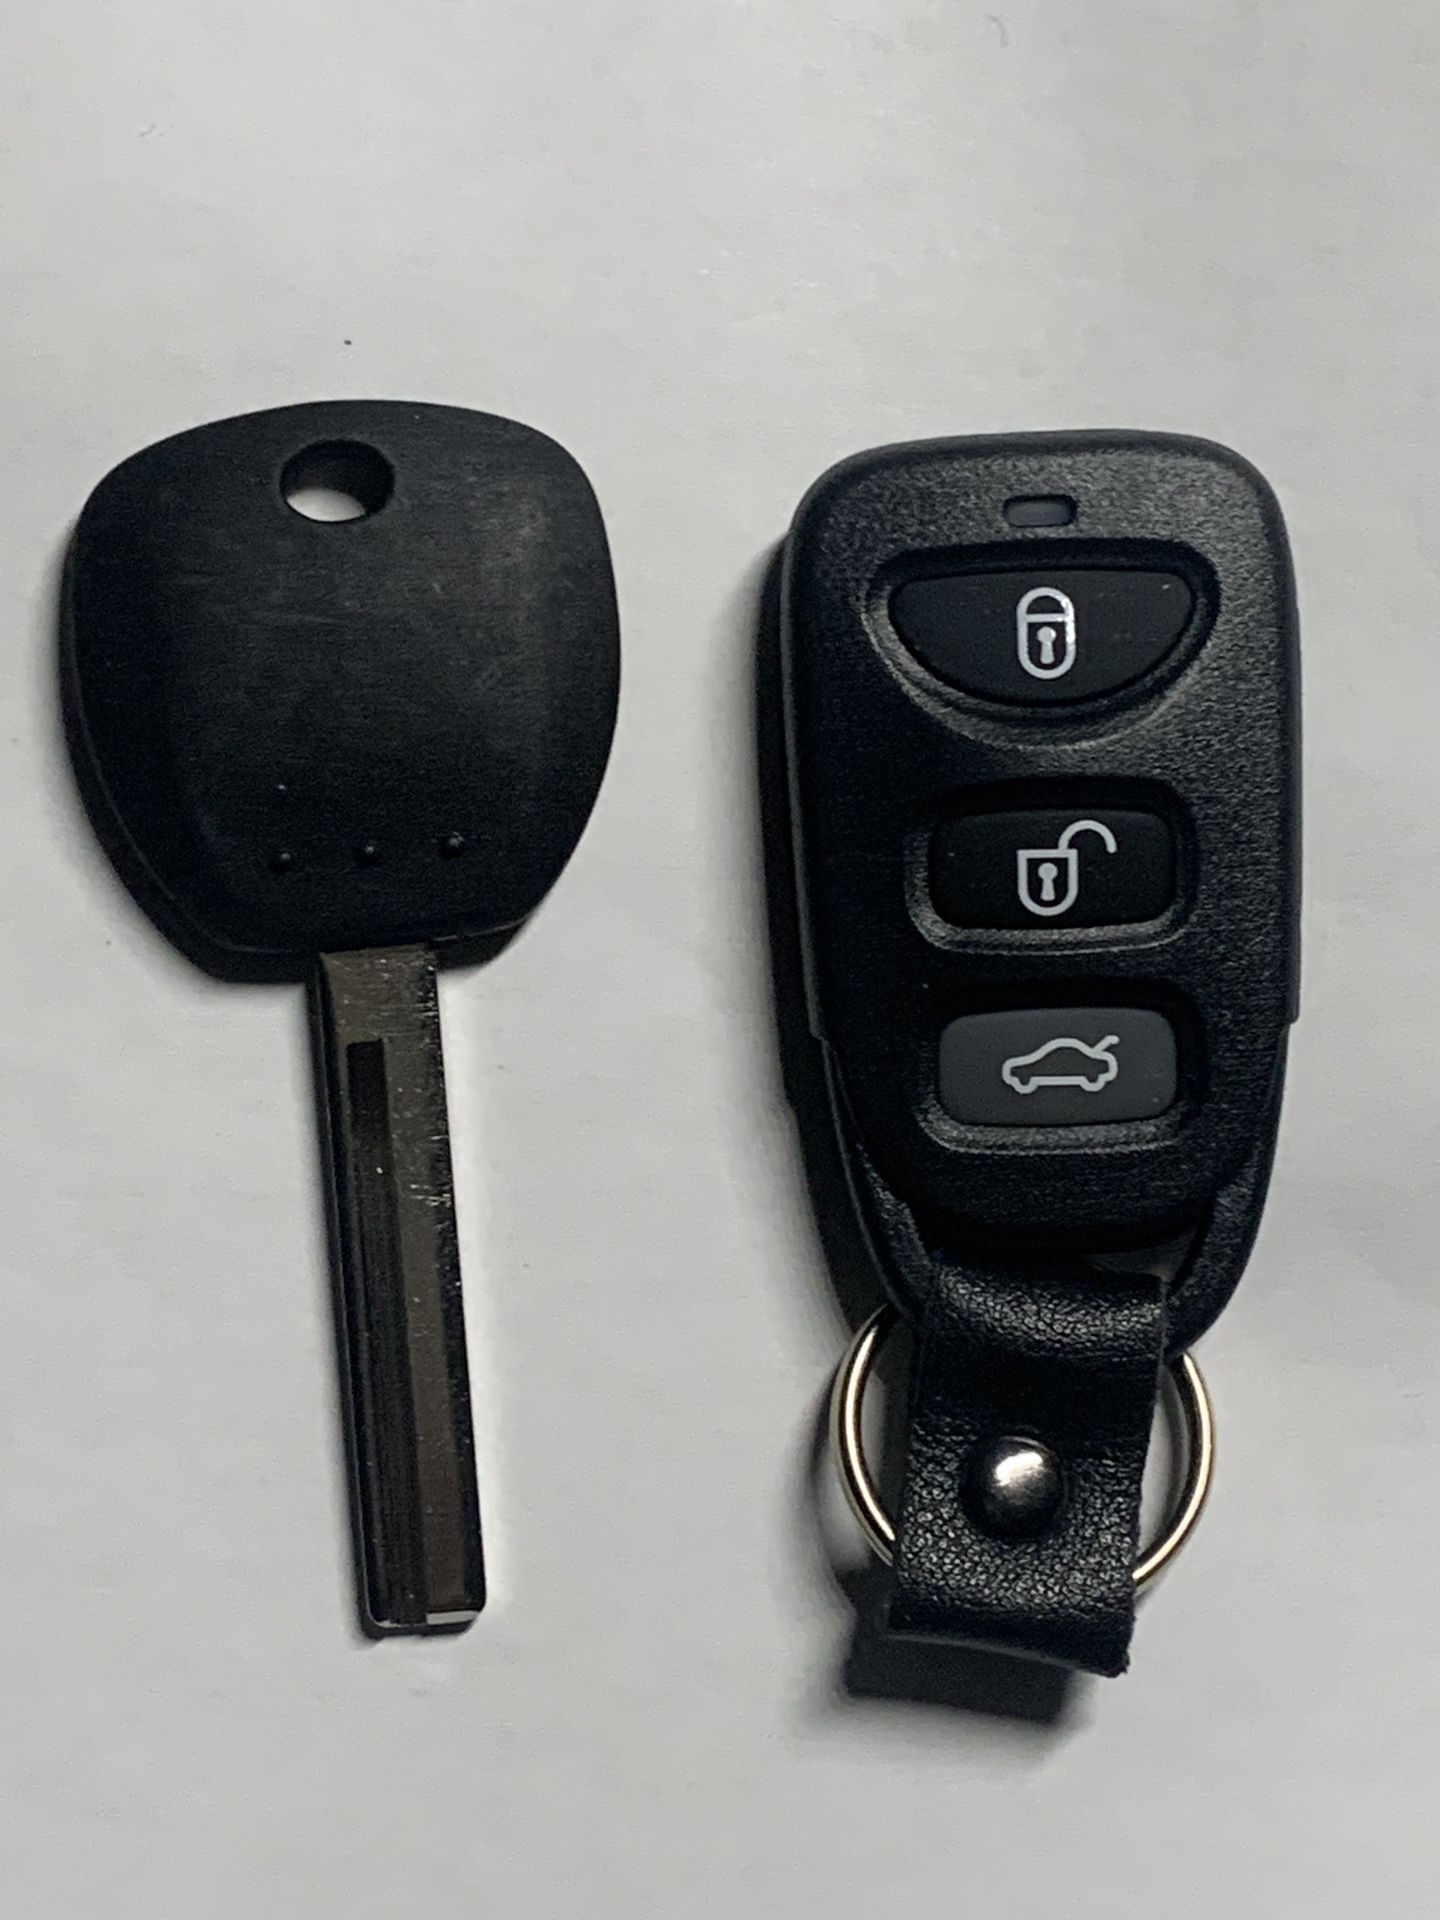 Hyundai Key